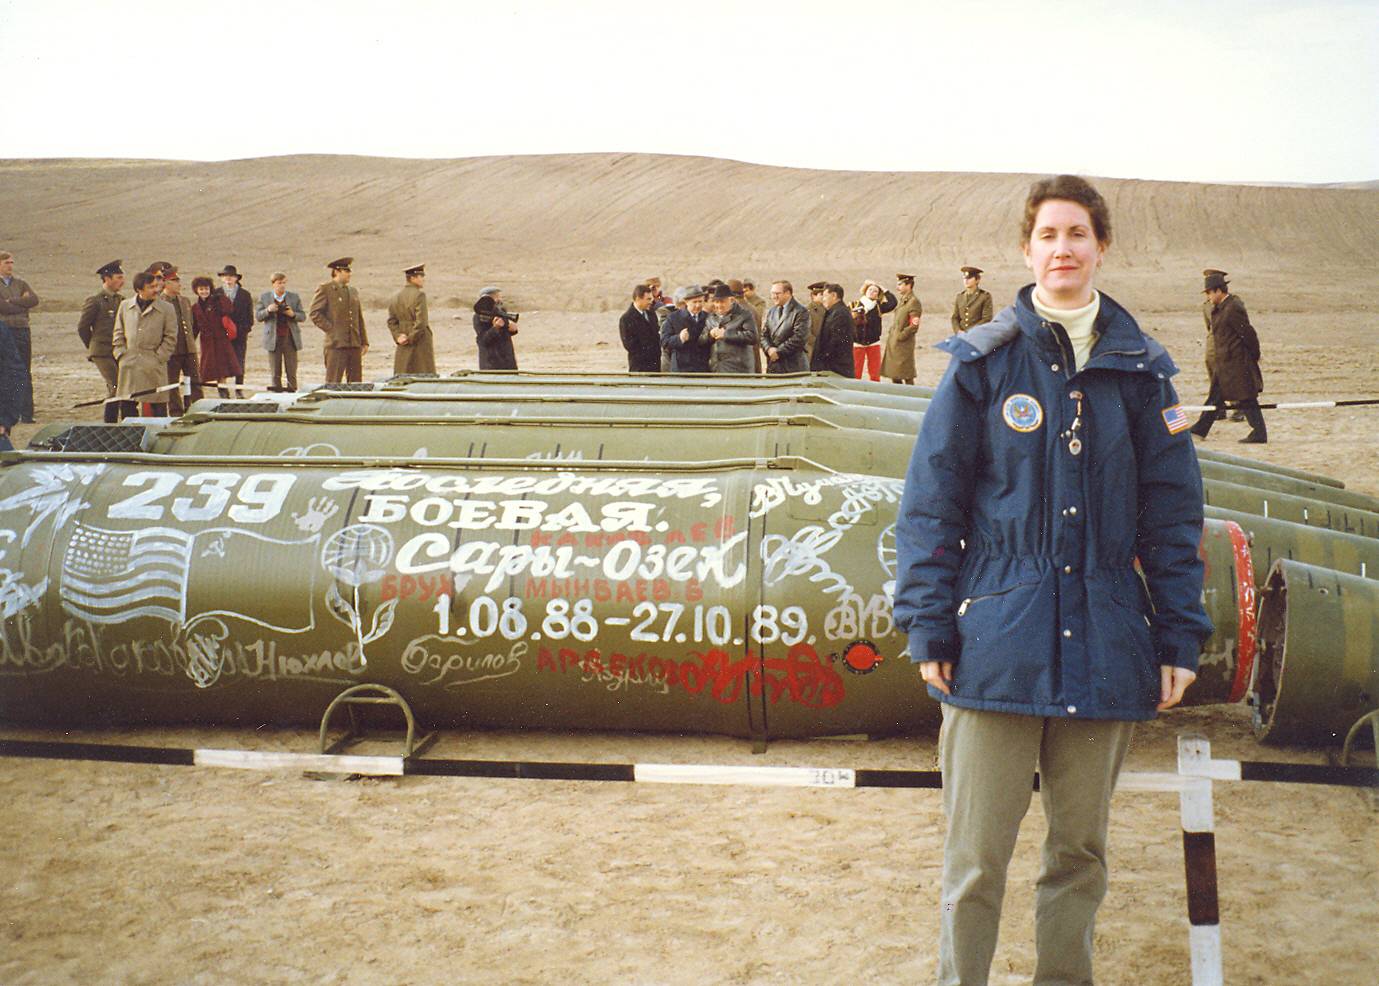 Эйлин Маллой — руководитель группы контроля за вооружениями при посольстве США в Москве на фоне ракет подлежащих утилизации на базе Сары-Озек. 11 мая 1990